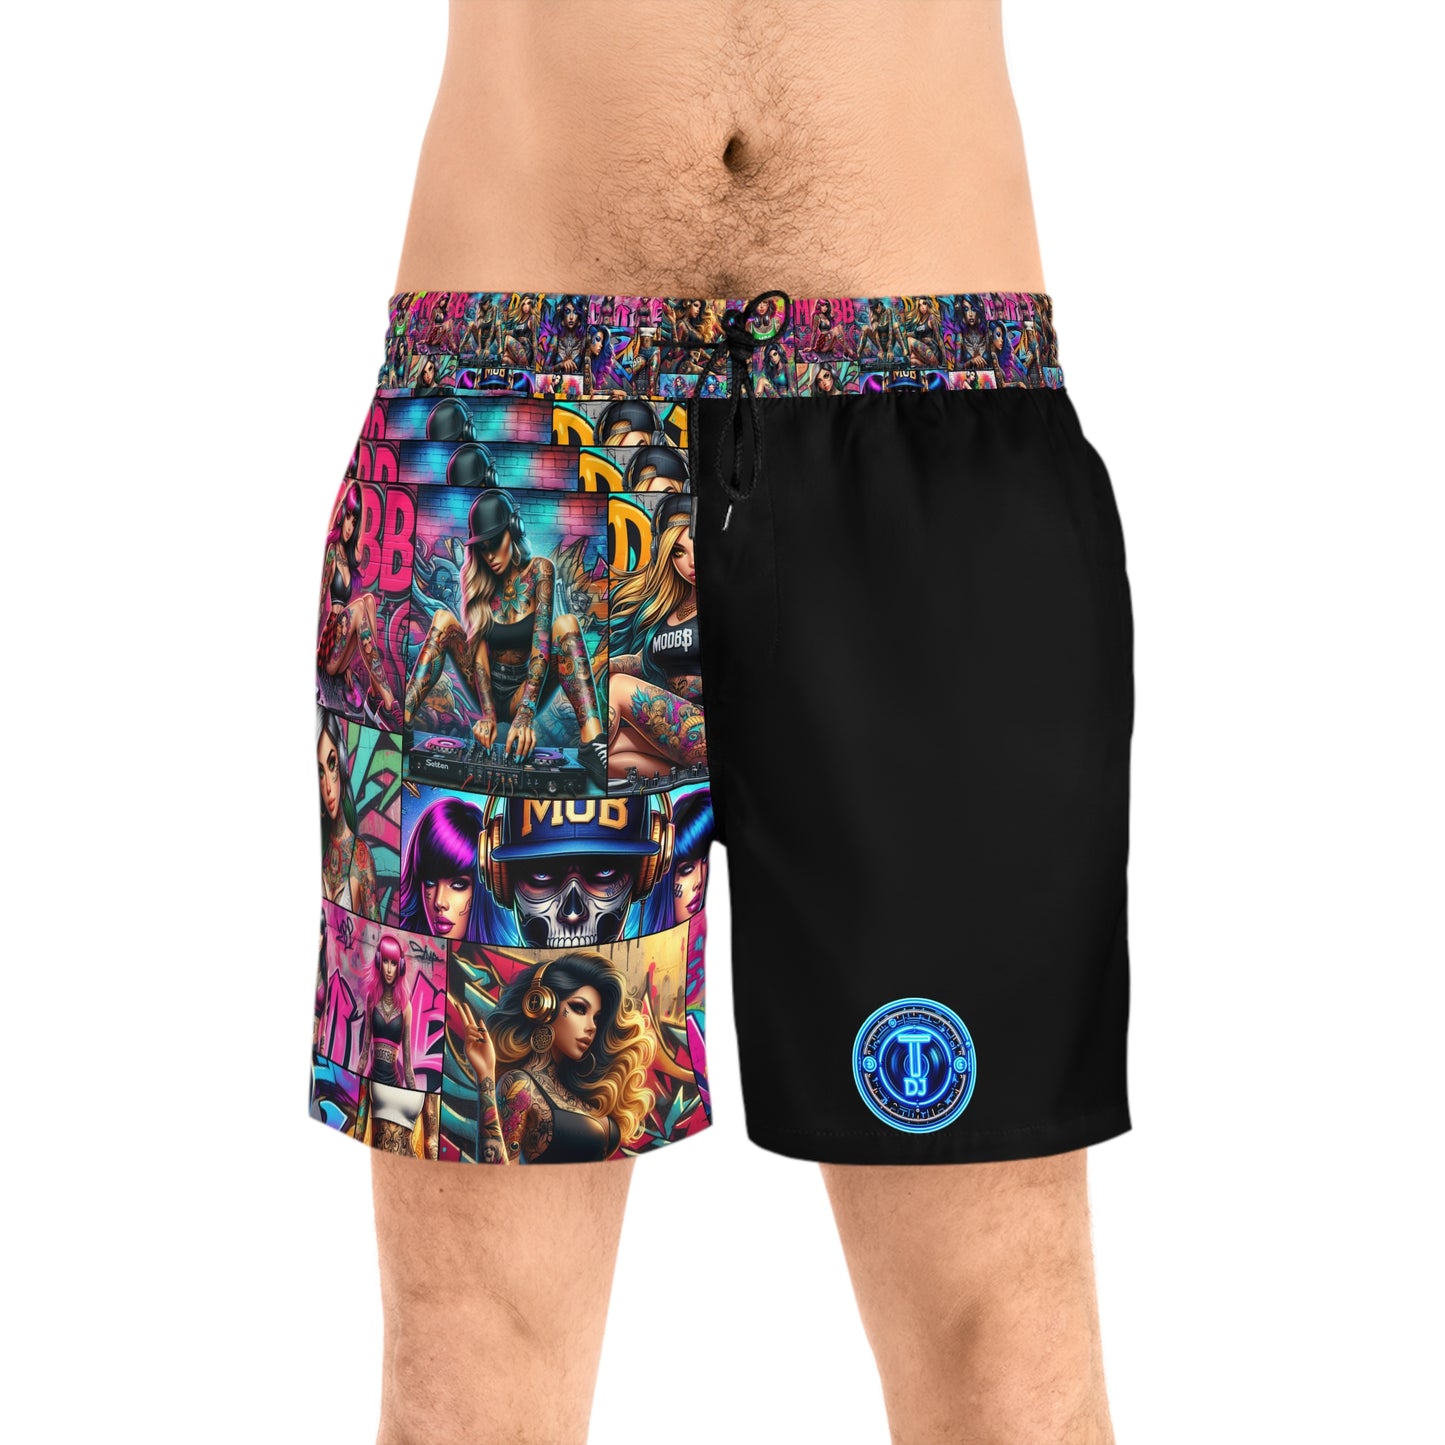 MDBTDJ#MLS1 Men's Mid-Length Swim Shorts Tattooed Dj's Limited Edition Swim Wear